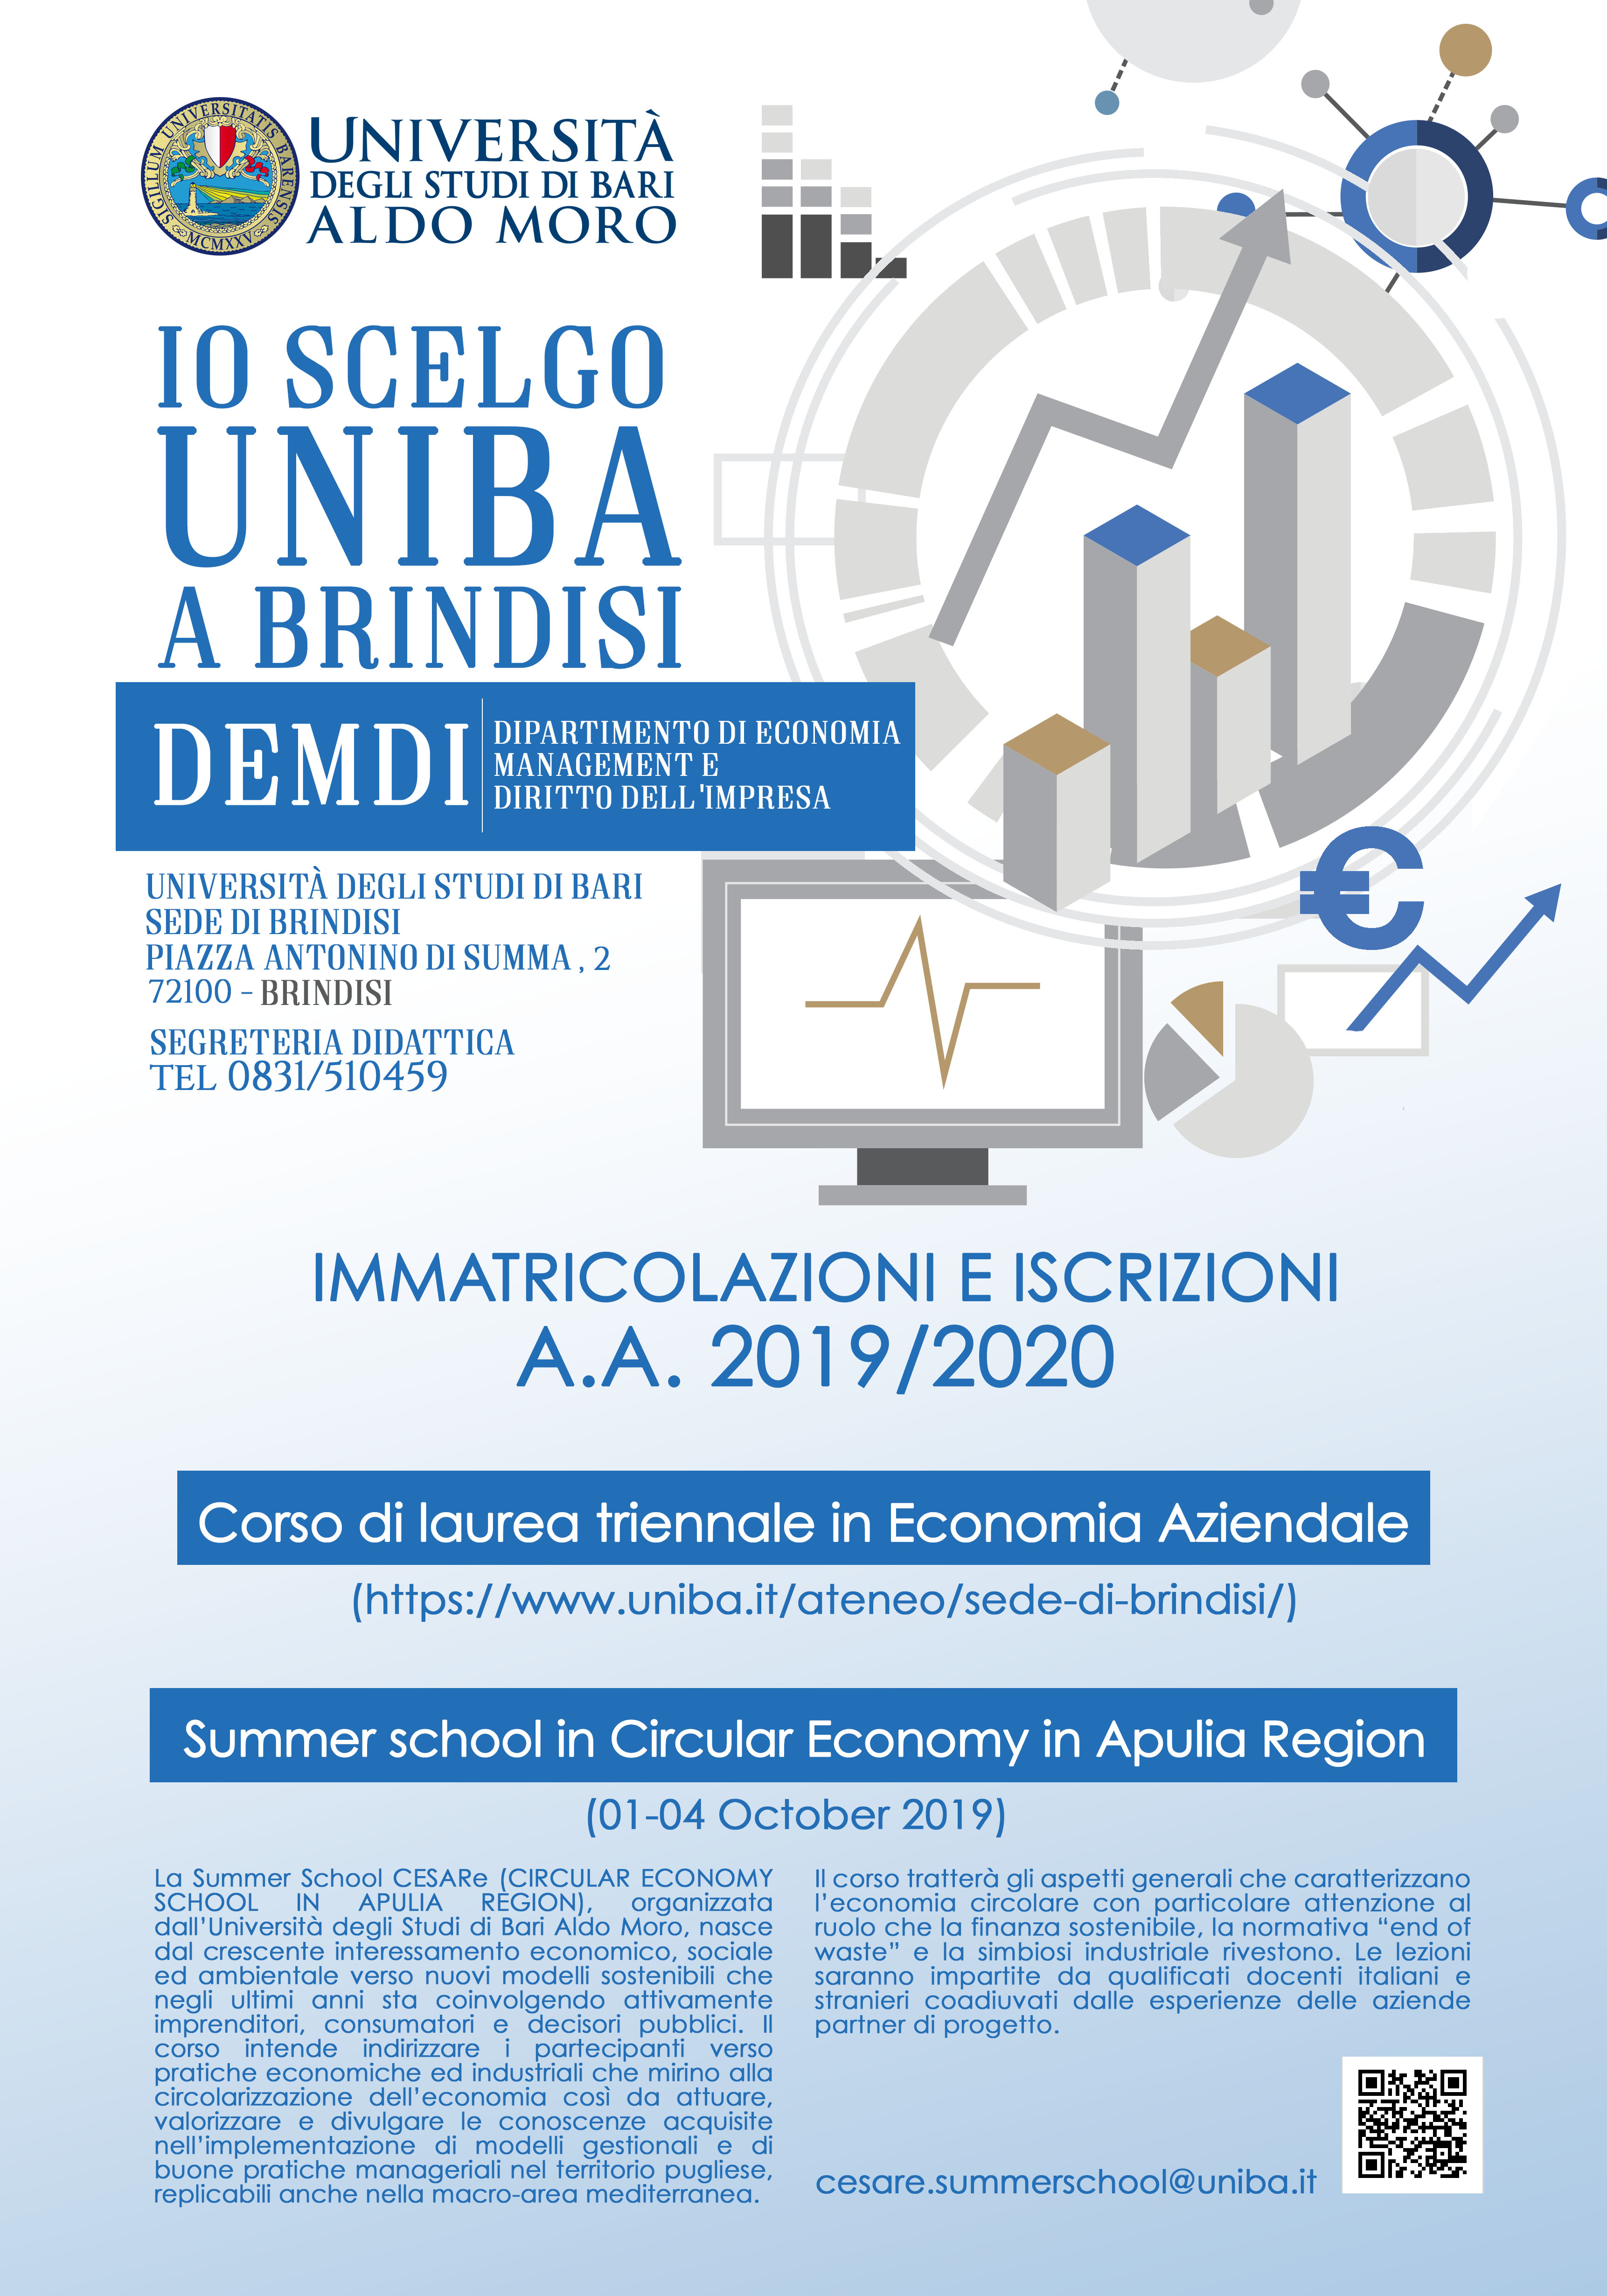 Mercoledì 18 settembre l’Università di Bari, in collaborazione con l’Ente portuale, presenterà il corso di laurea in Economia Aziendale